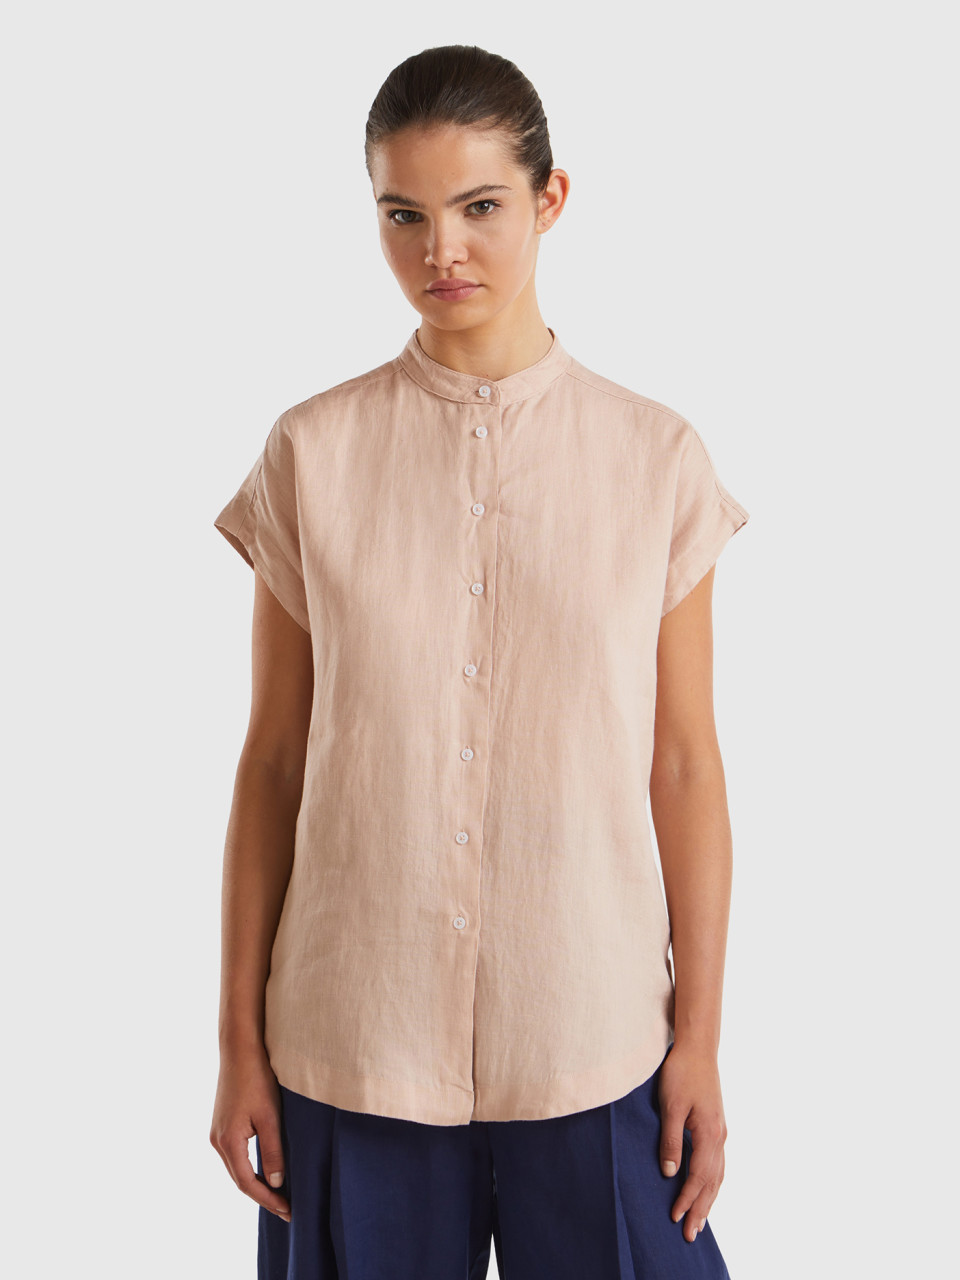 Benetton, Mandarin Shirt In Pure Linen, Soft Pink, Women